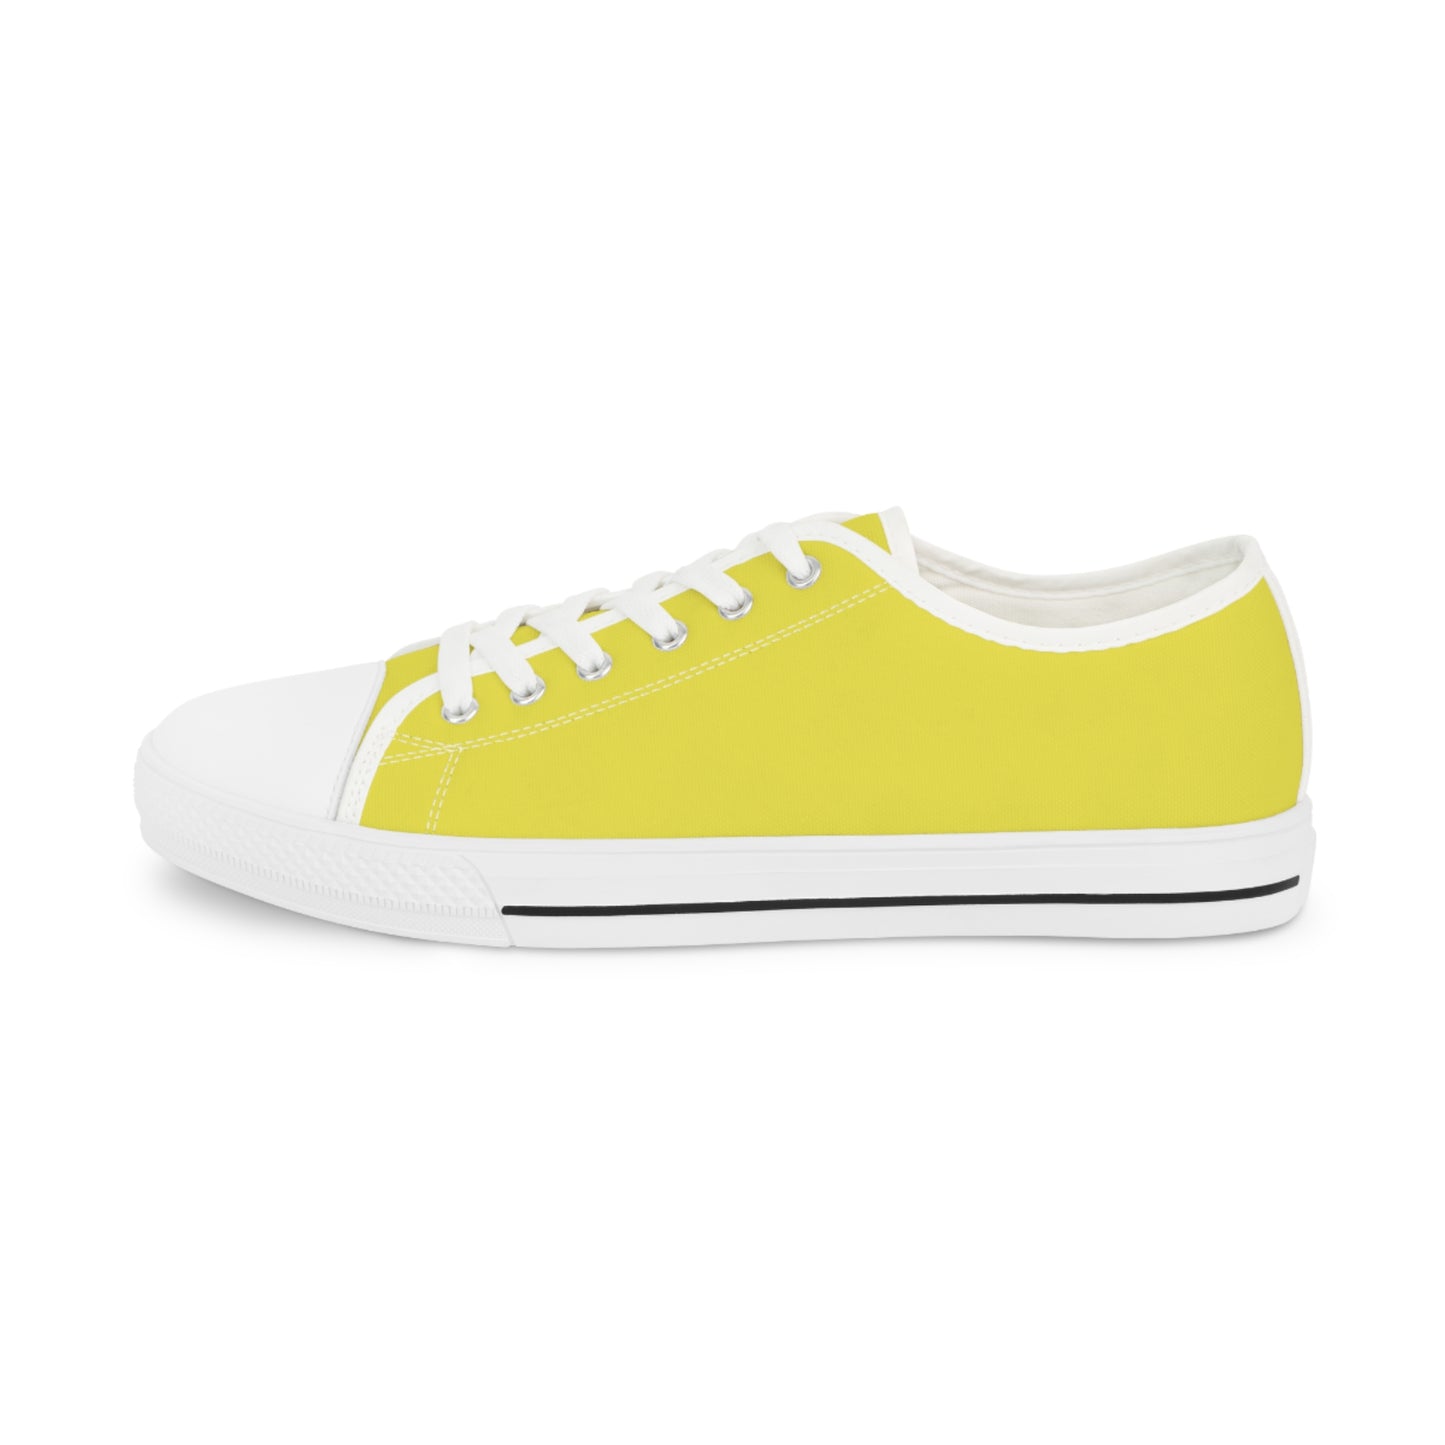 Men's Low Top Sneakers - Yellow US 14 Black sole